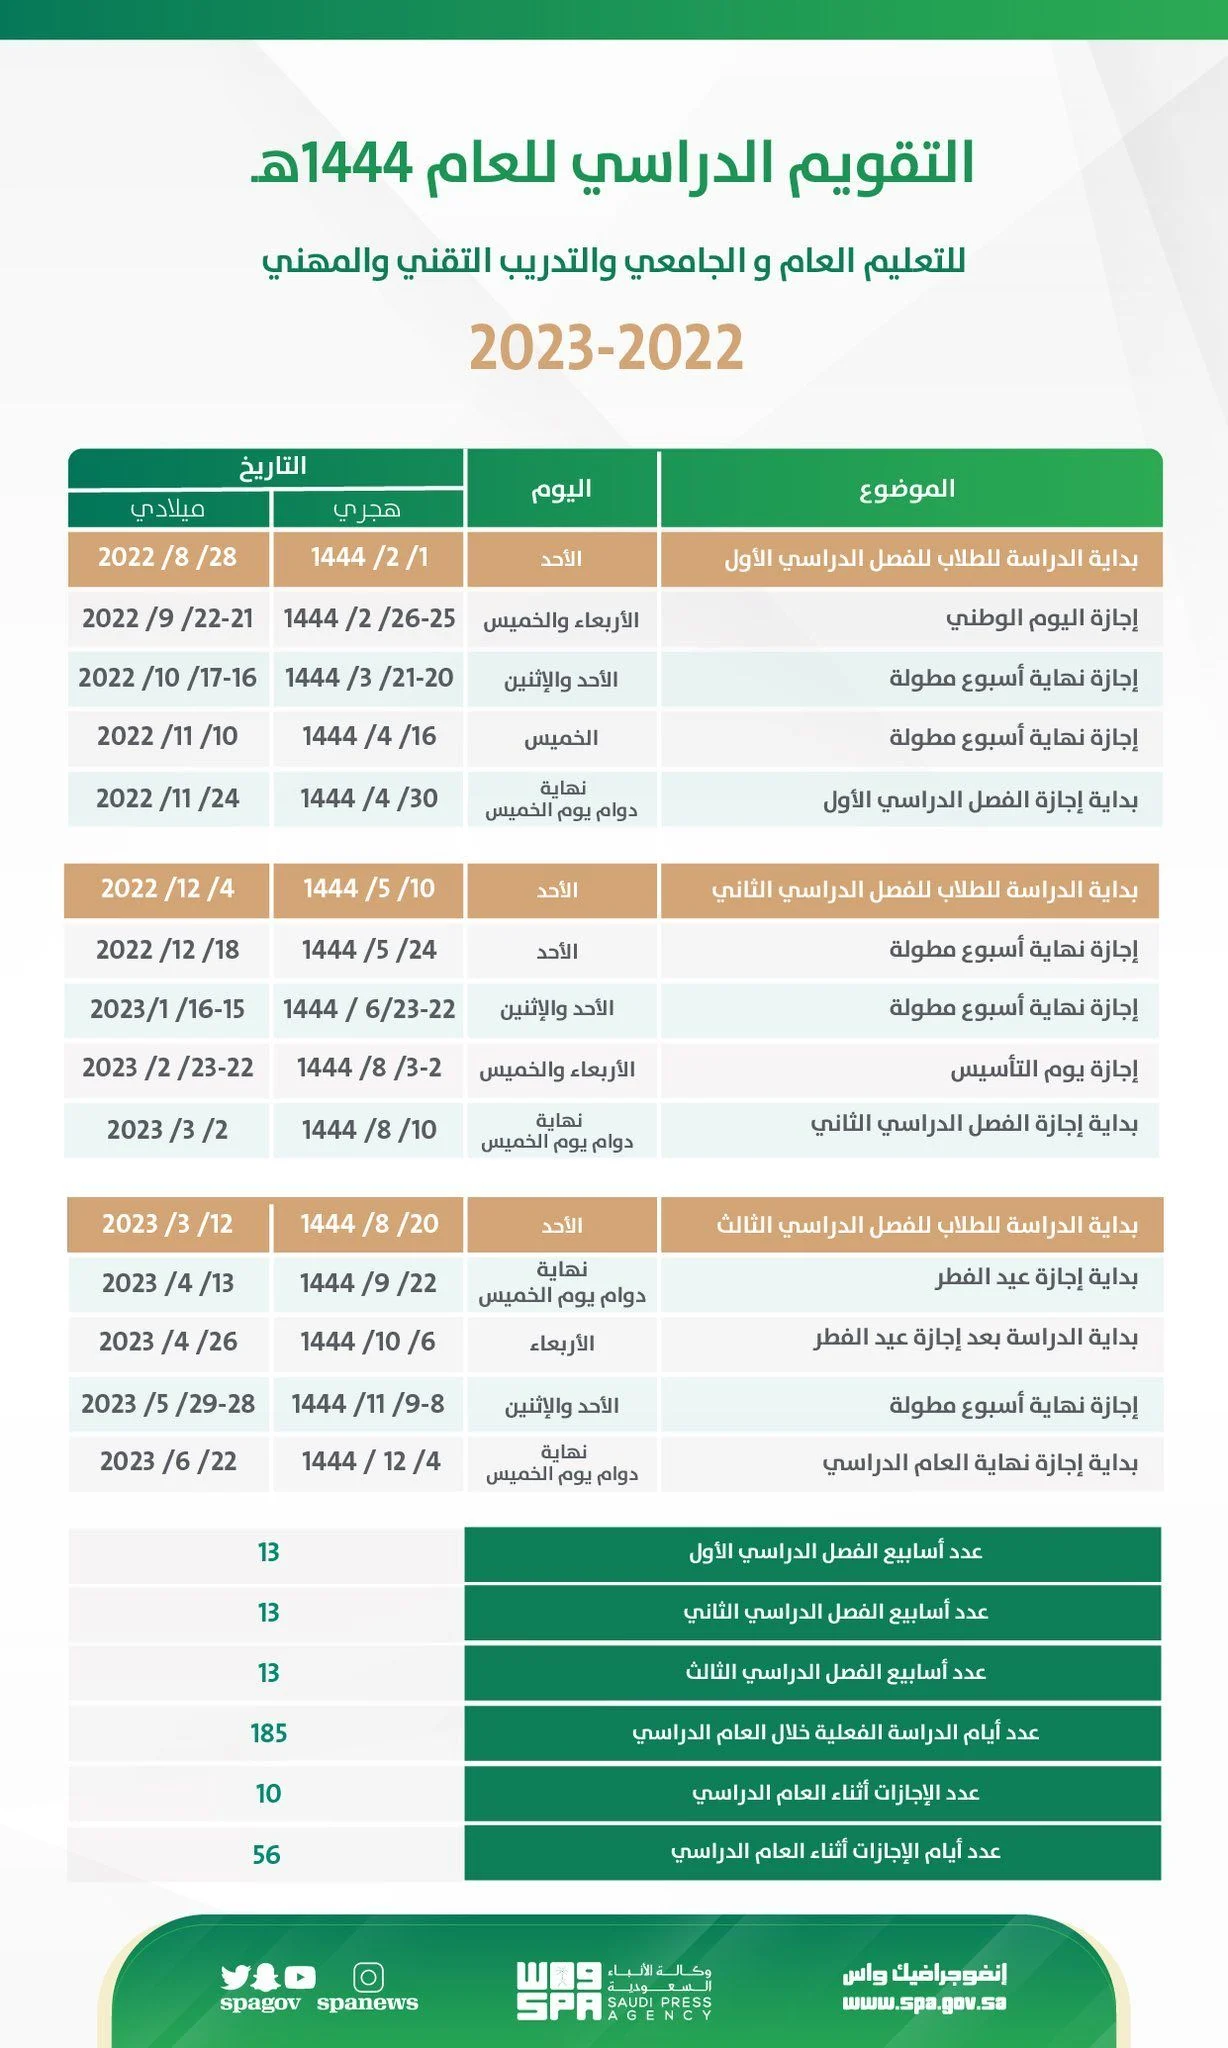 كم يتبقى لمدرسة السعودية 2023 لعام 1444؟